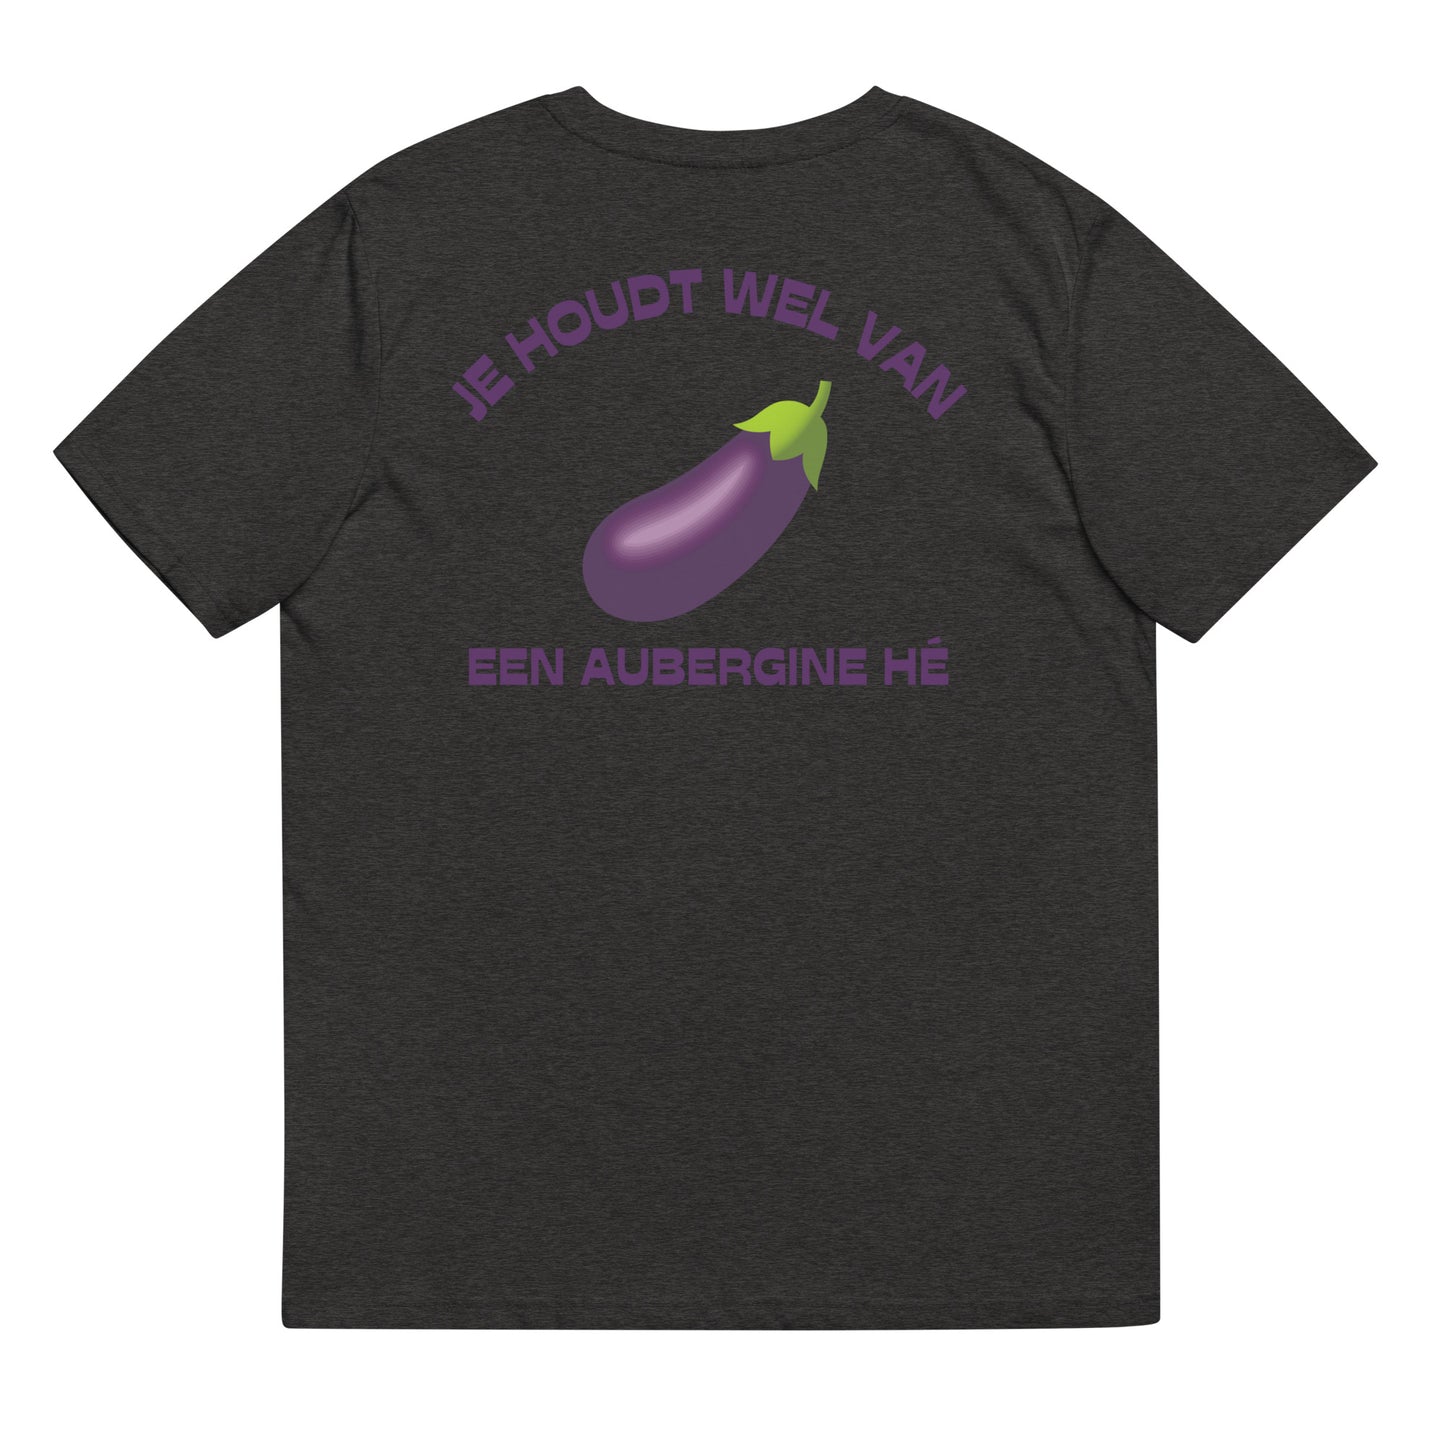 T-Shirt - Je Houdt Wel Van Een Aubergine Hé